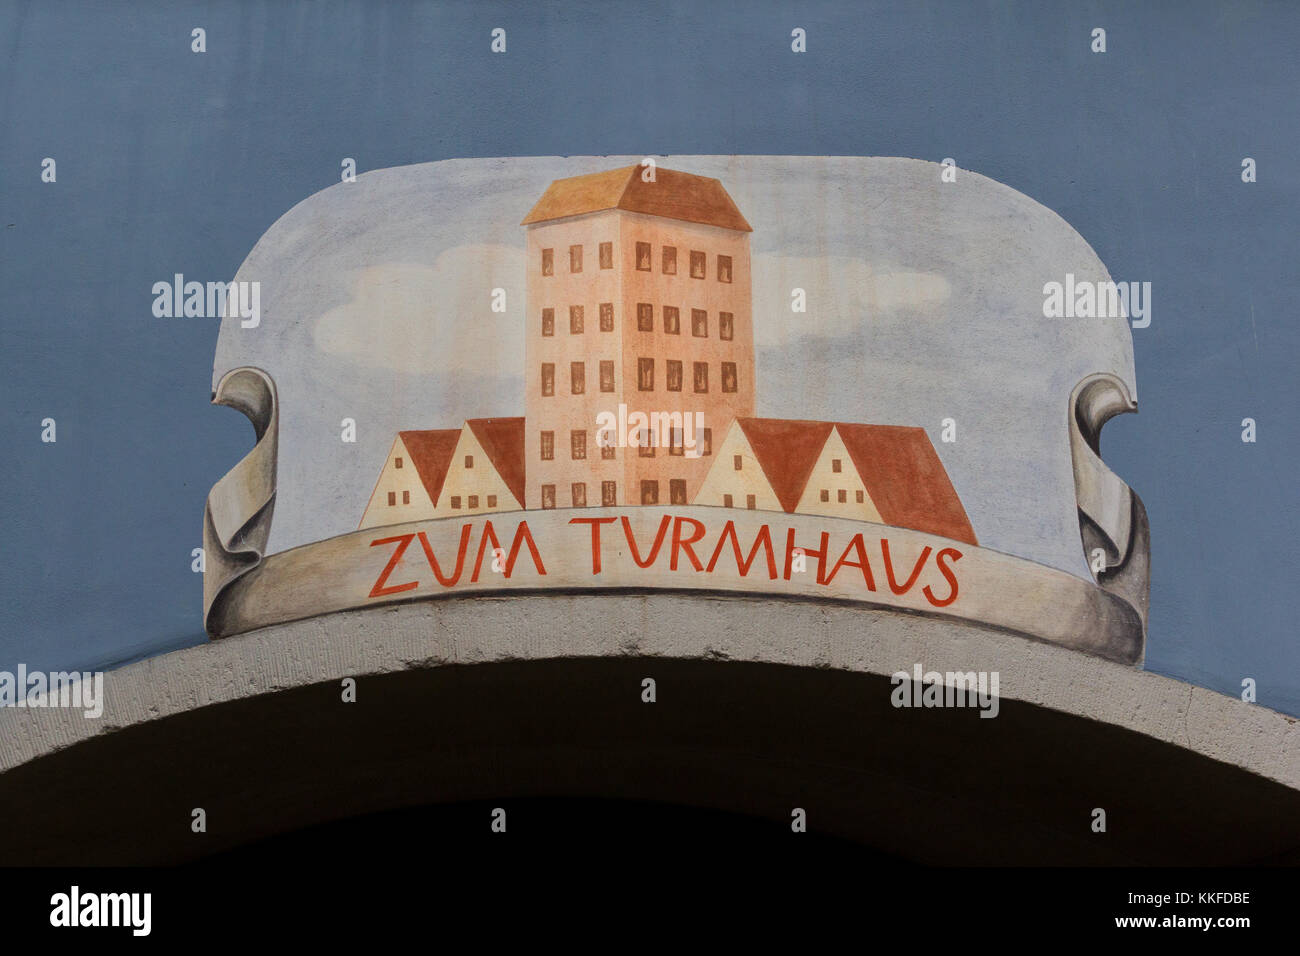 Haus Zum Turm - Zurich pittoresque Banque D'Images